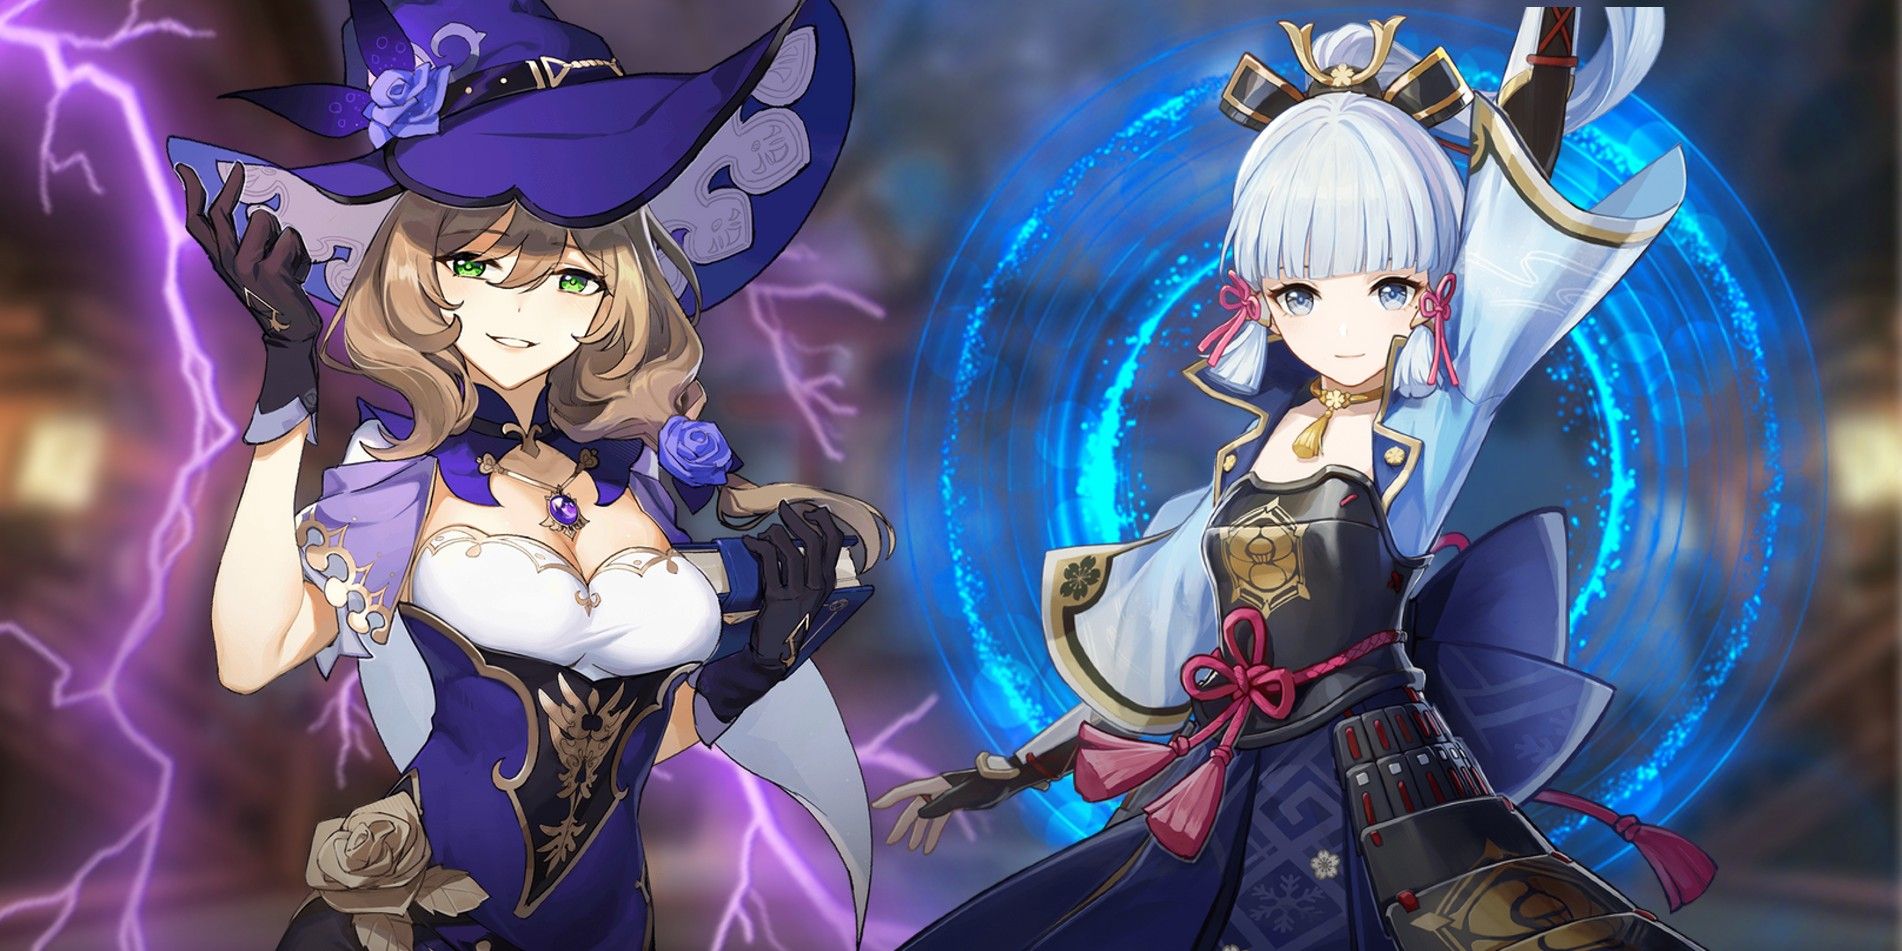 Ayaka de Genshin Impact à direita com um efeito de luz circular azul atrás dela e Lisa à esquerda com um raio roxo atrás dela.